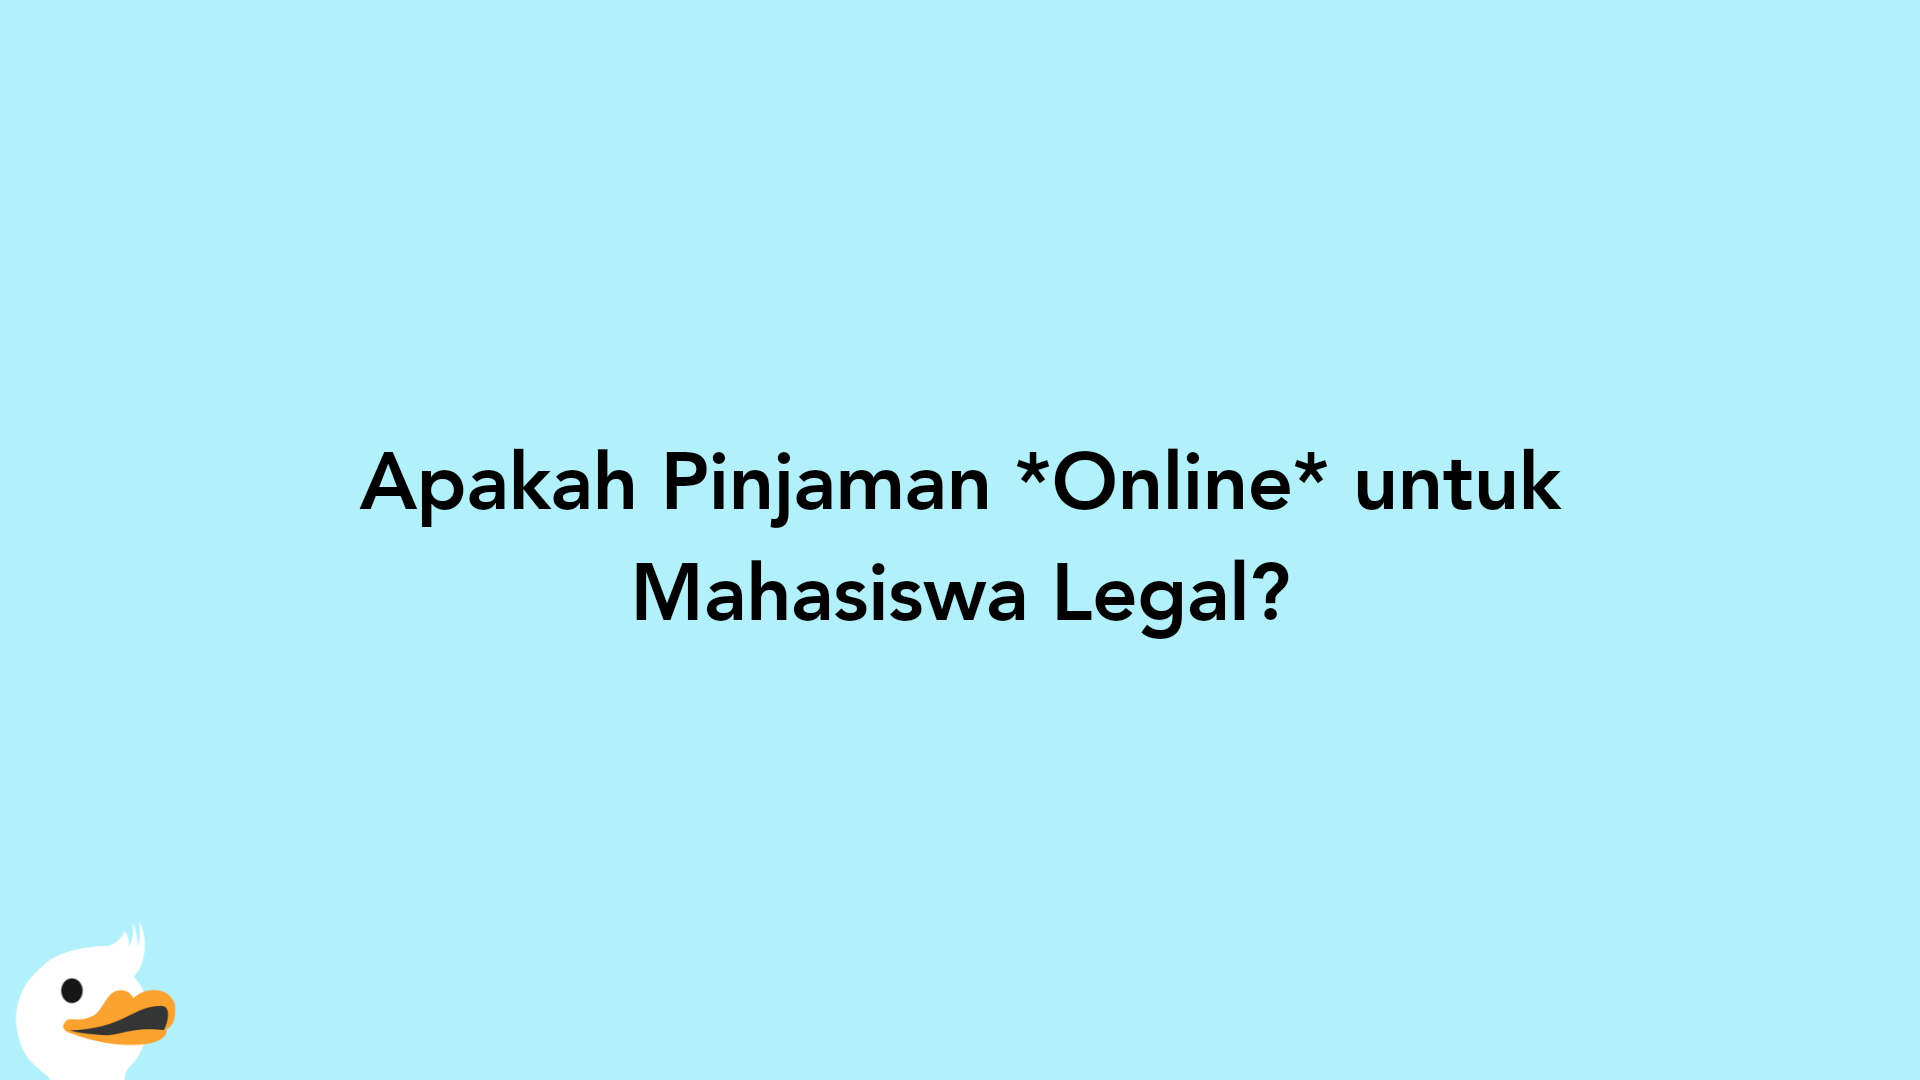 Apakah Pinjaman Online untuk Mahasiswa Legal?